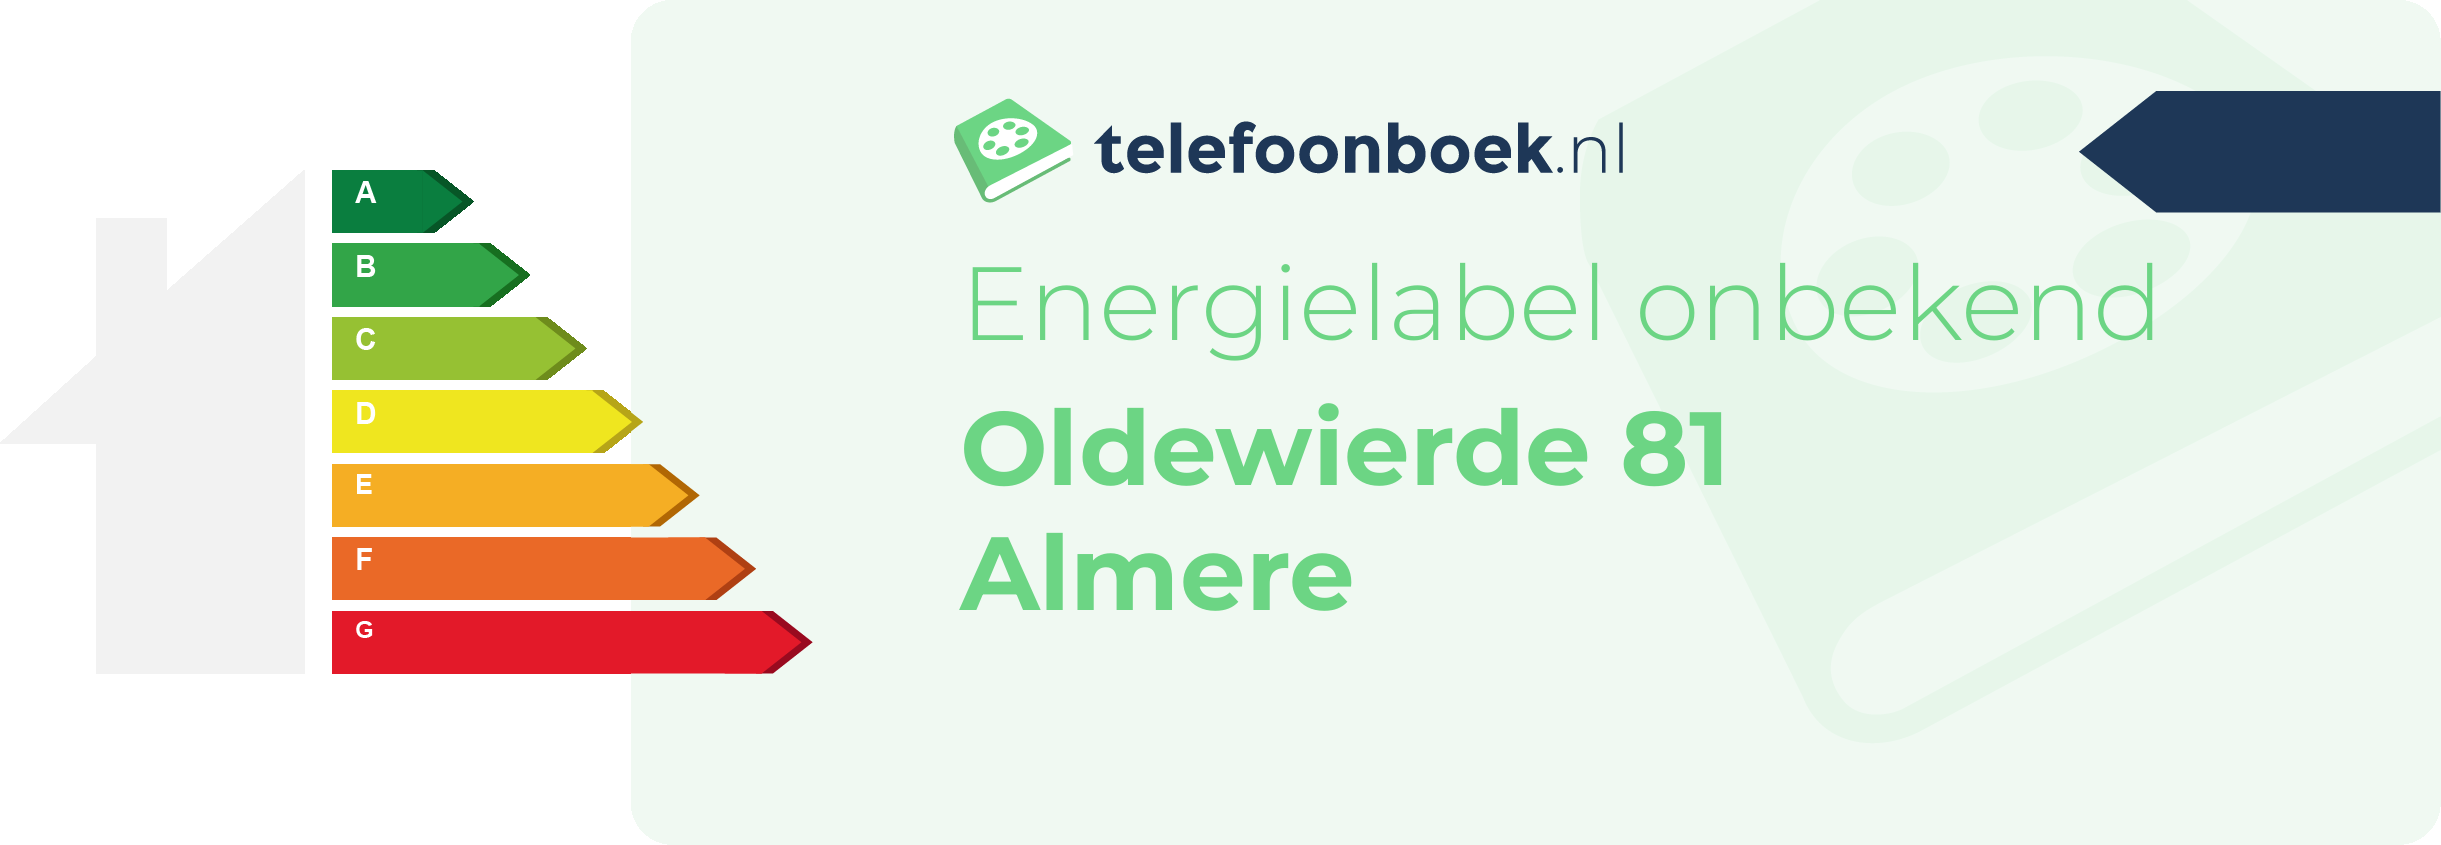 Energielabel Oldewierde 81 Almere